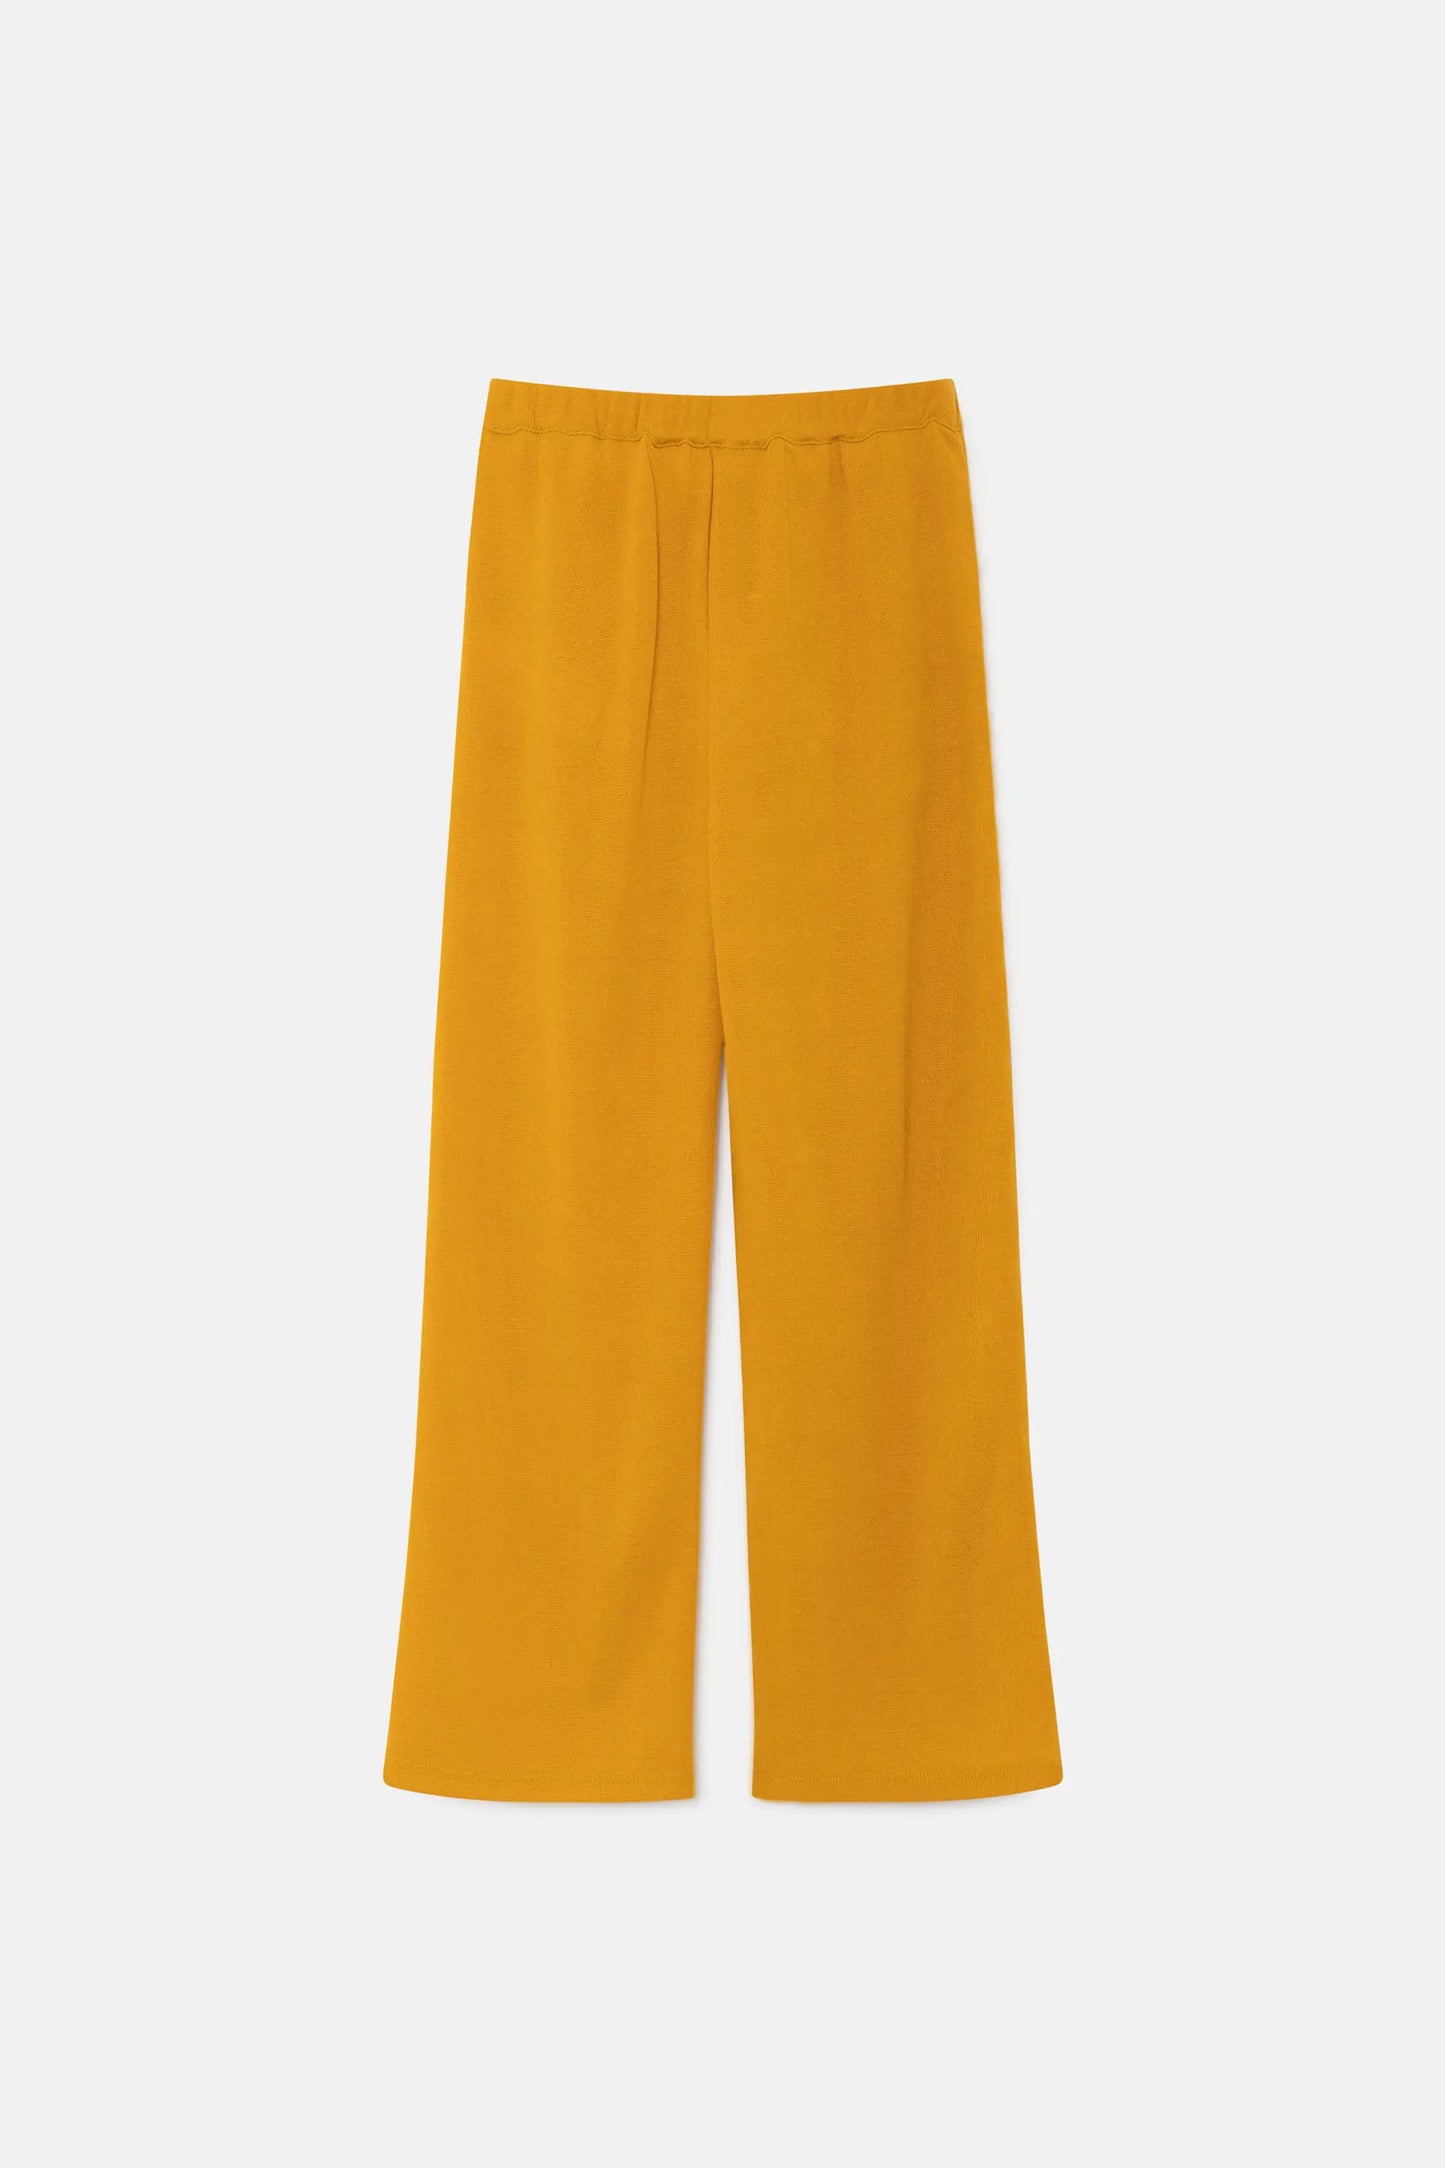 Pantalón de niña largo elástico amarillo